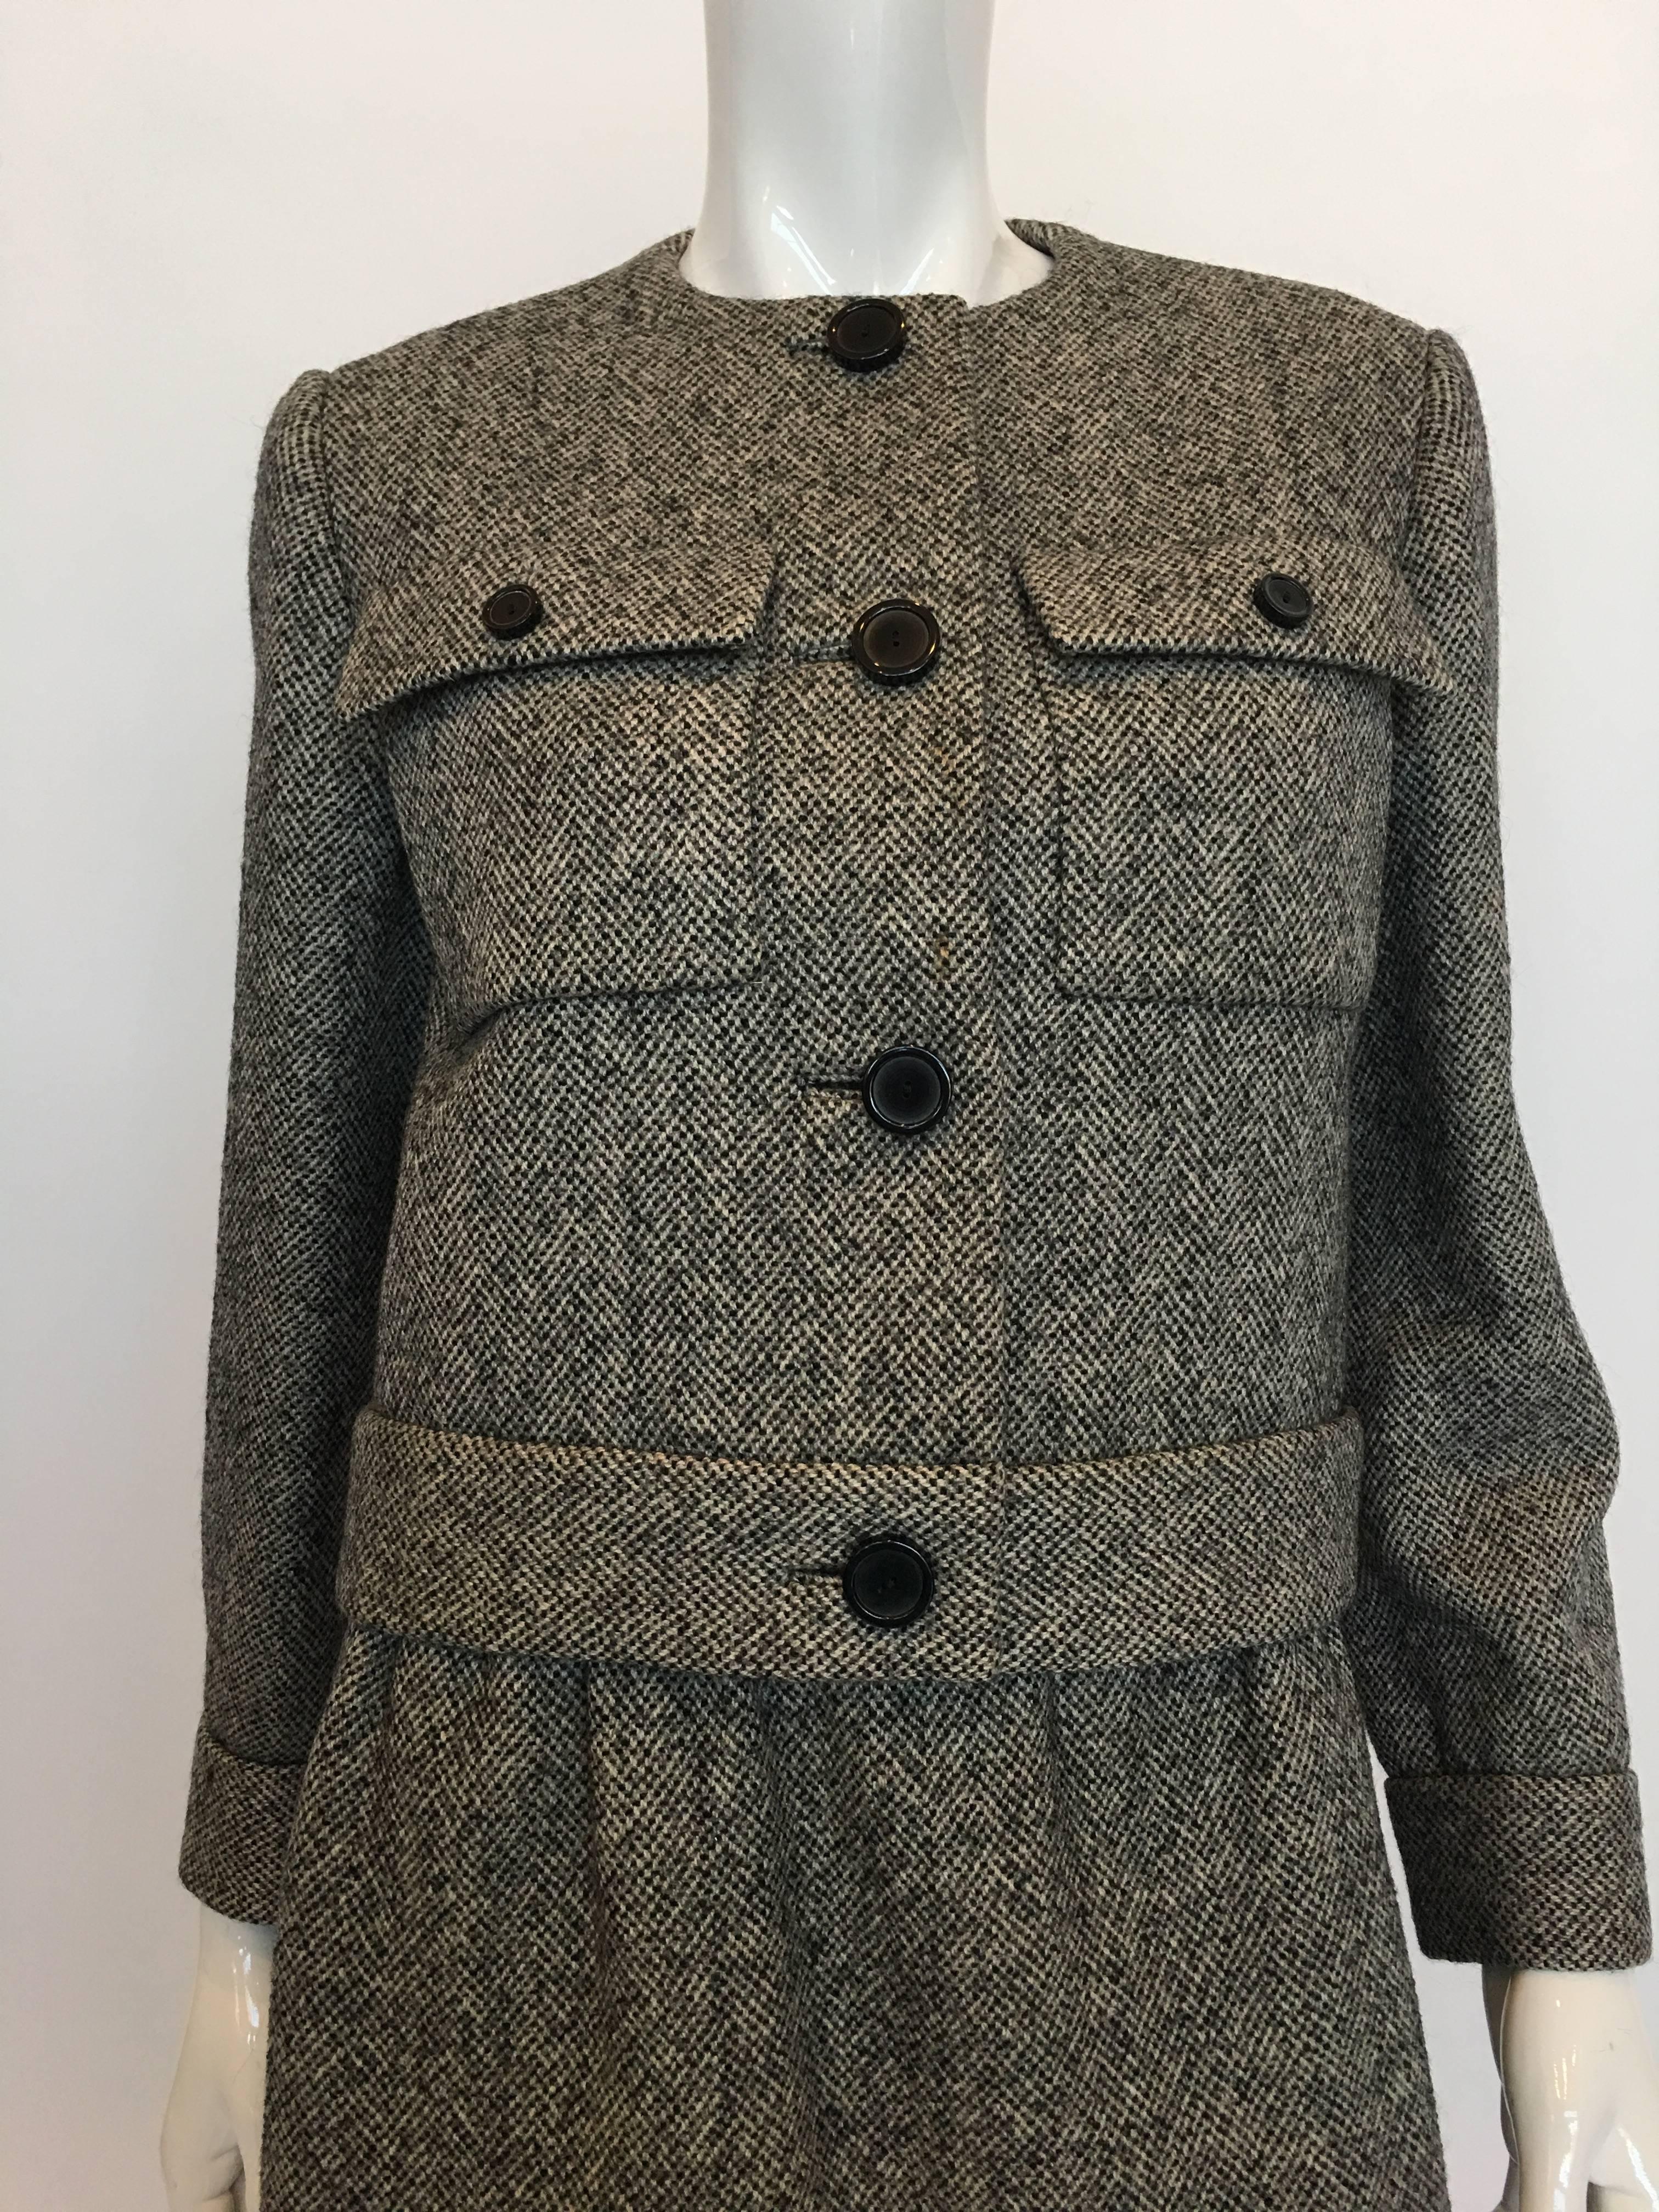 Norell Vintage 1960's Tweed Jupe Suit avec des trous de boutons insérés et 2 poches plaquées à l'avant. La jupe est doublée et dispose d'une trappe latérale avec fermeture par crochet.

*TOUTES LES MESURES SONT PRISES À PLAT*

Veste
D'épaule à